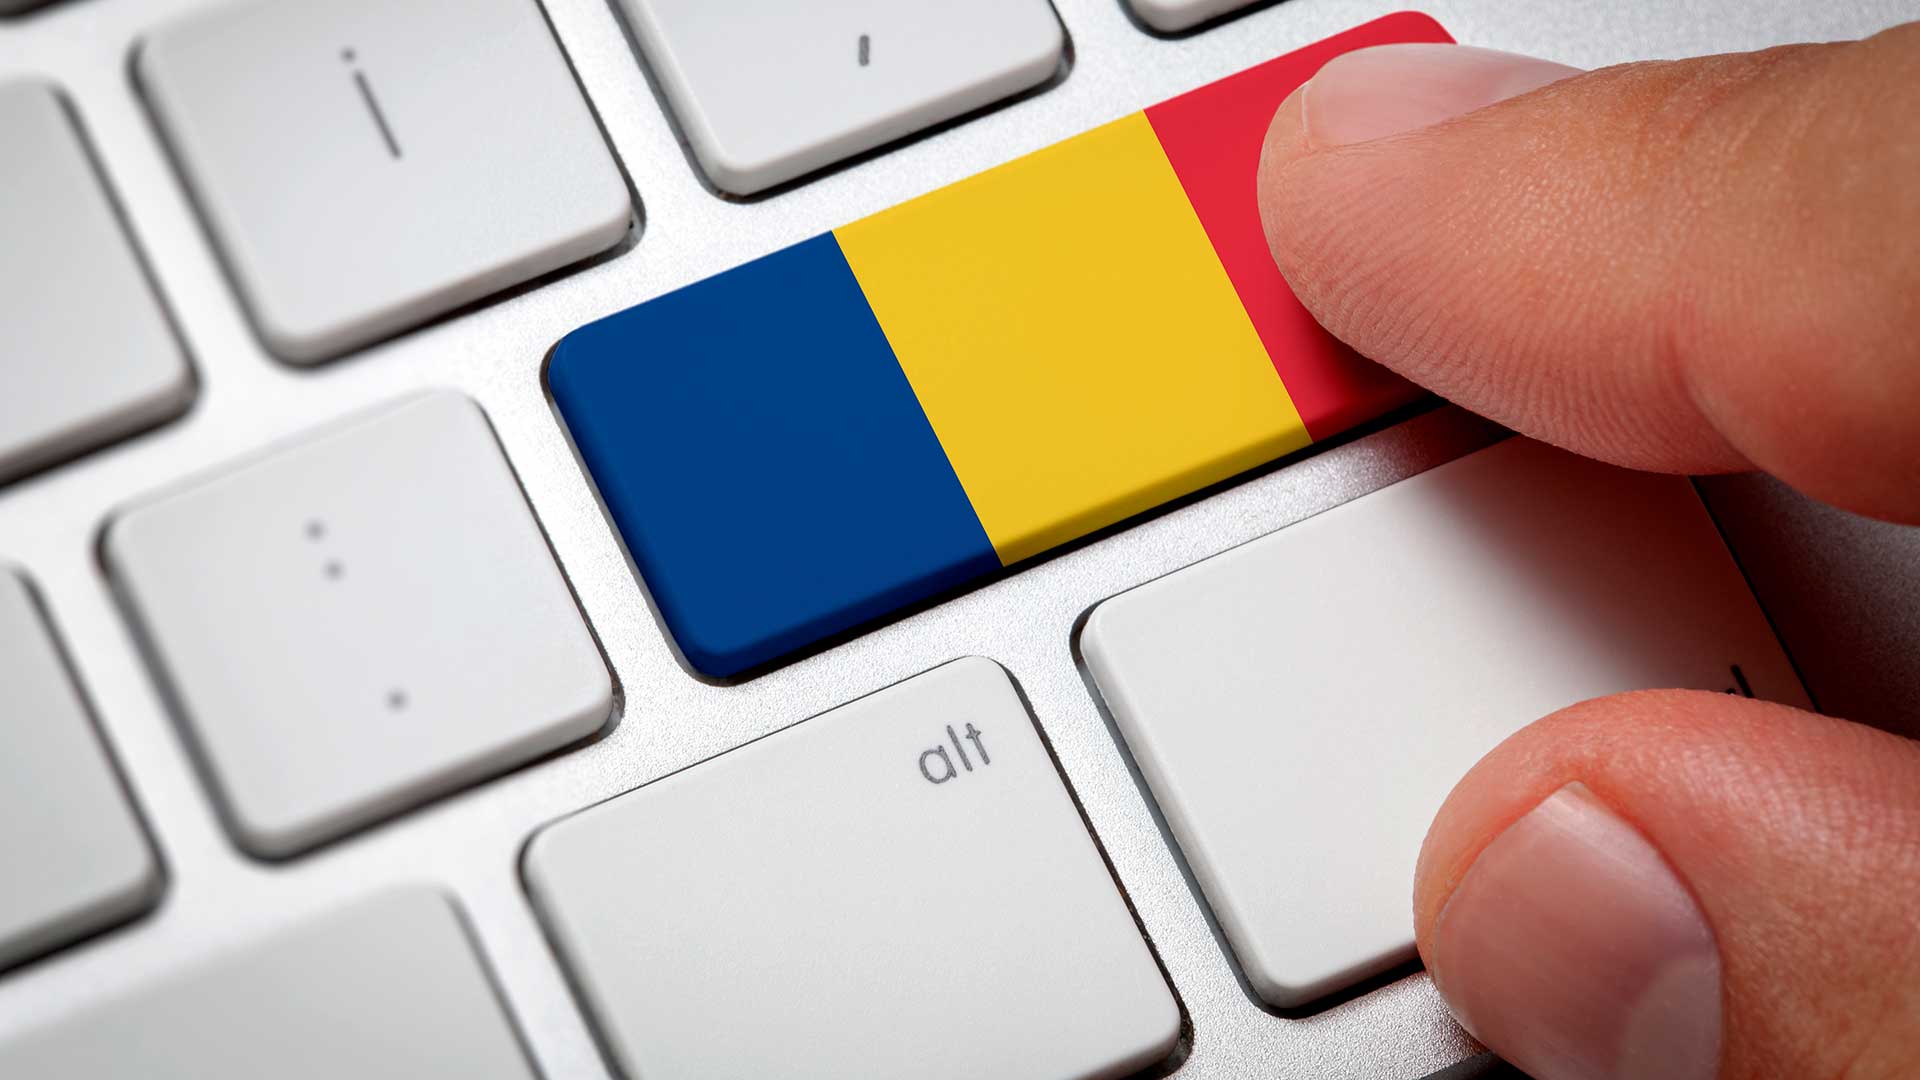 Румынский флаг на клавиатуре означает поиск работы в Румынии через интернет